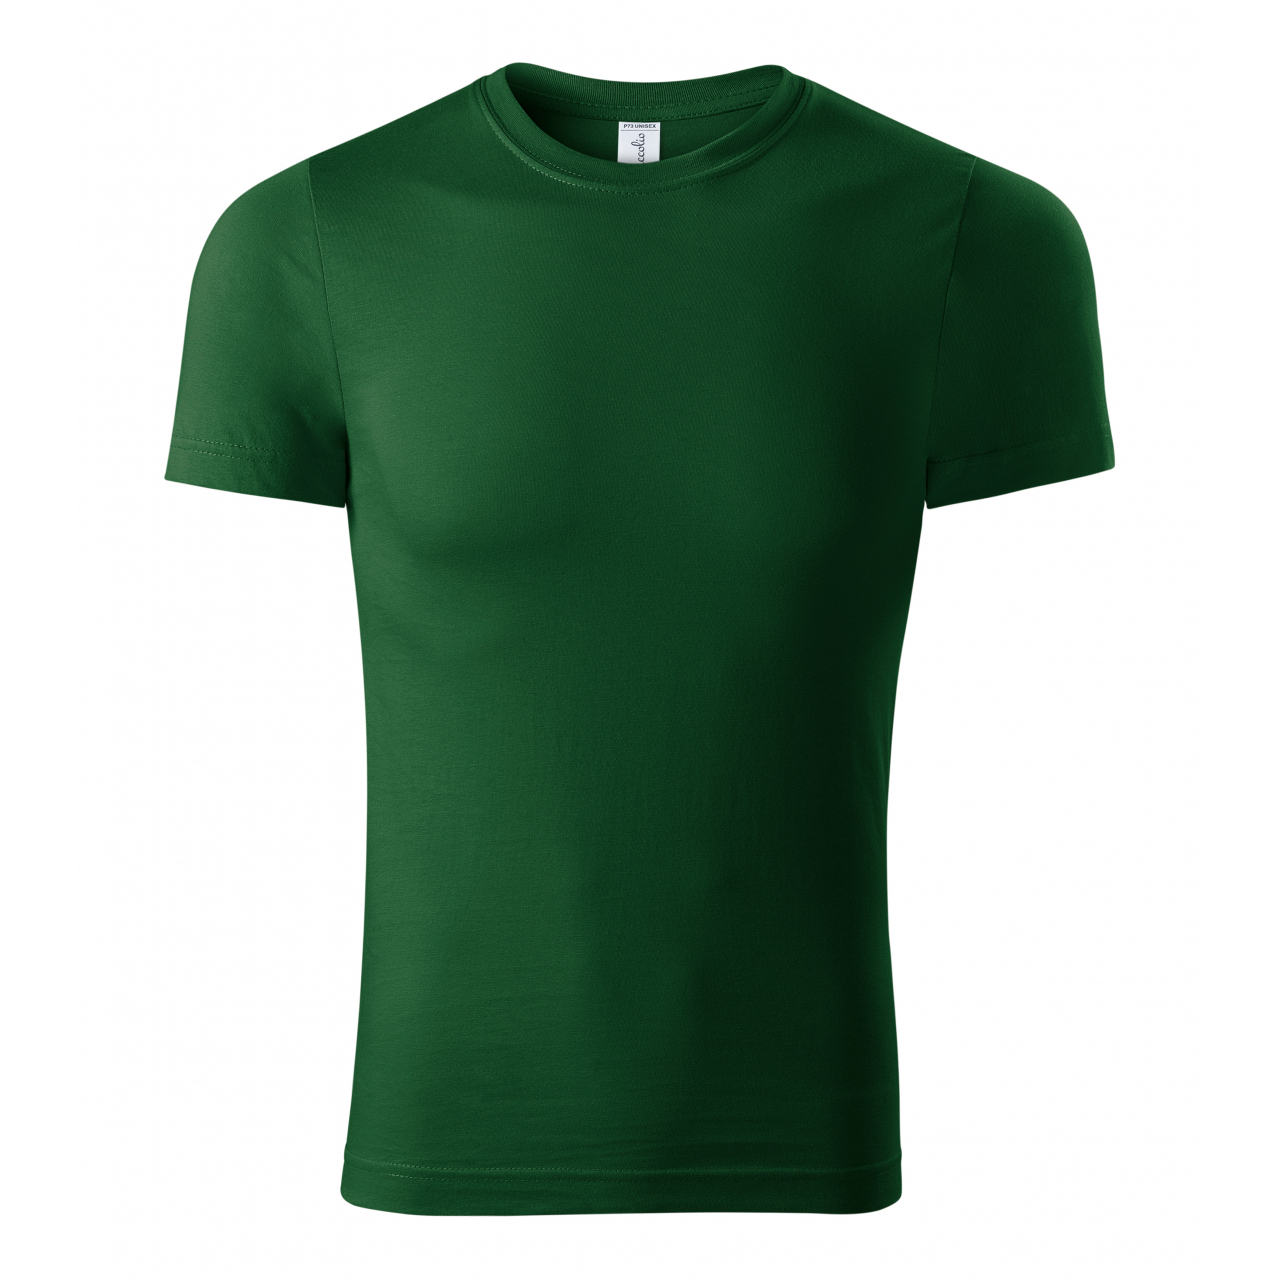 Tričko unisex Piccolio Paint - tmavě zelené, L